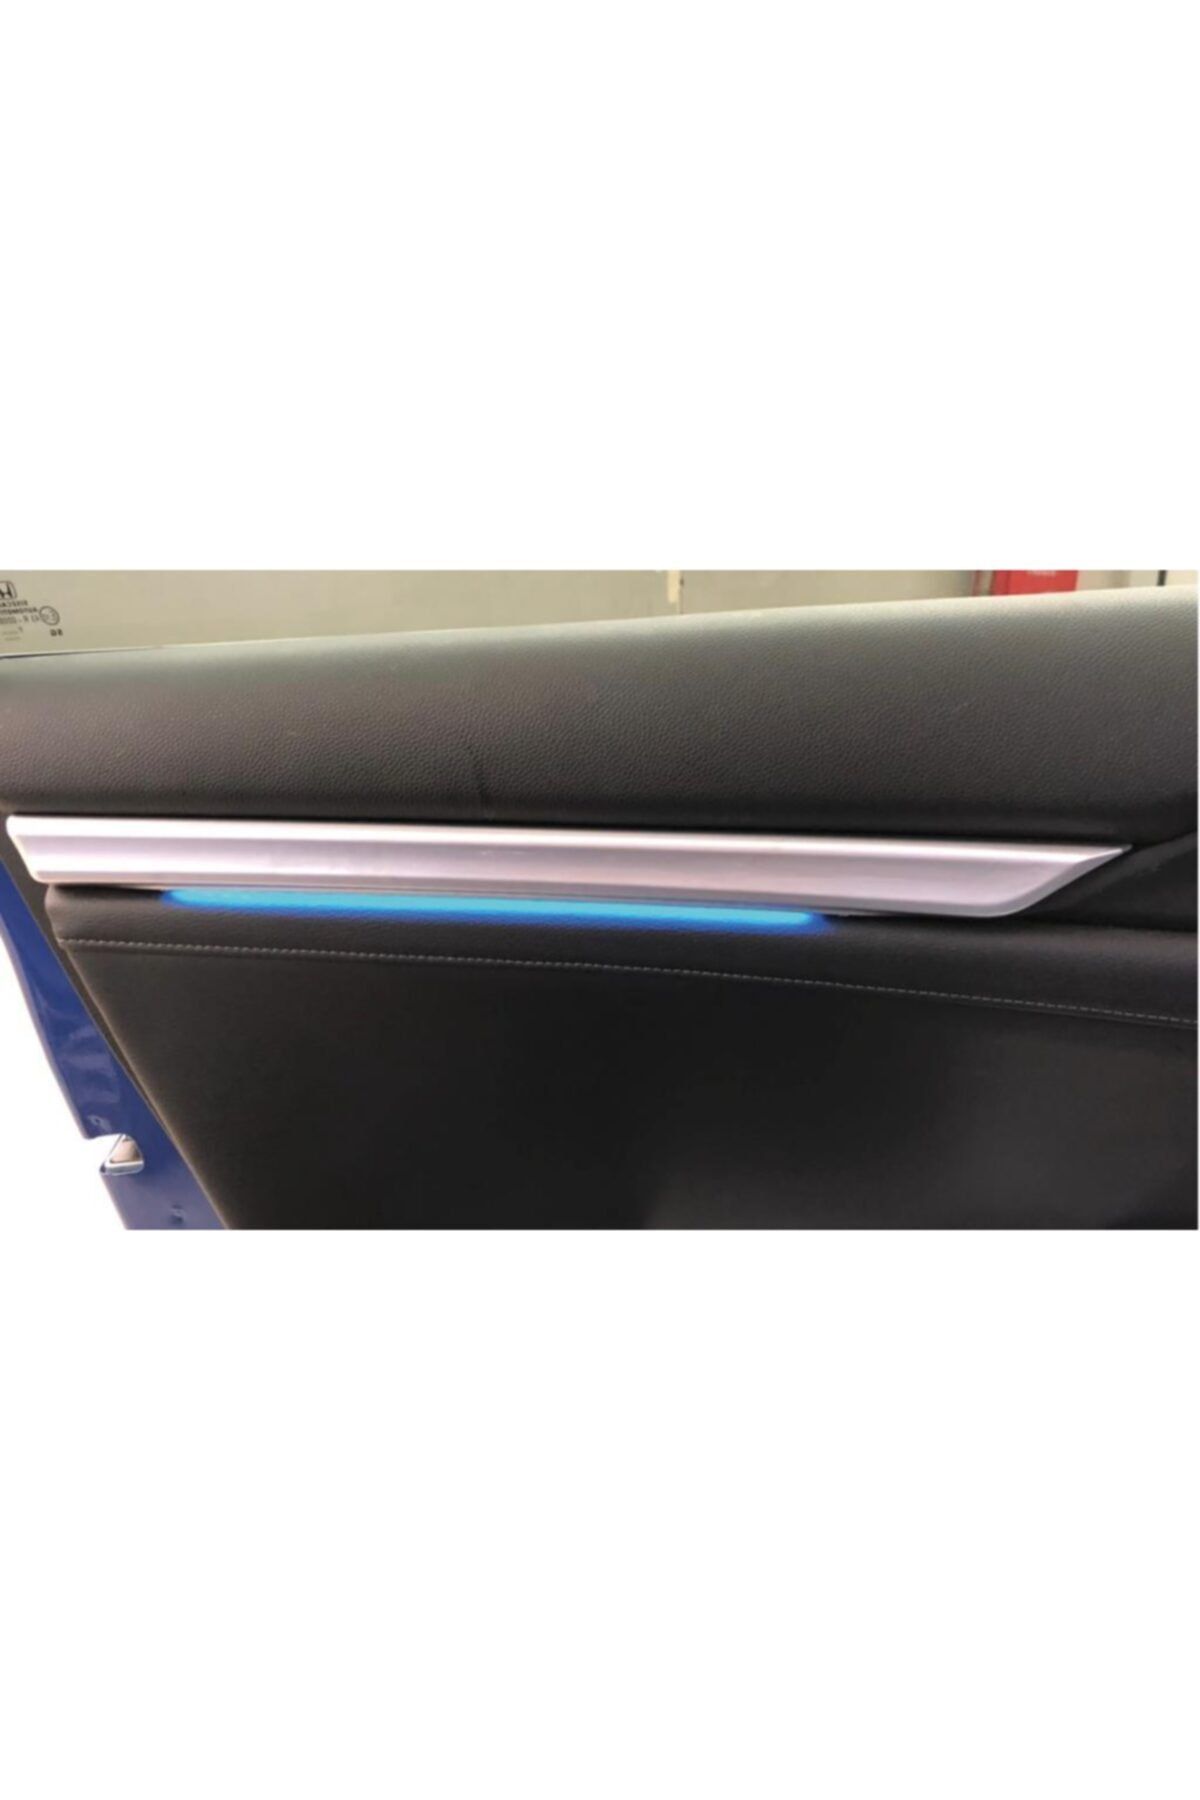 OLED GARAJ Honda Civic İçin Uyumlu Fc5 Işıklı Ledli İç Kapı Çıtası Elegance-Premium 2016-2020